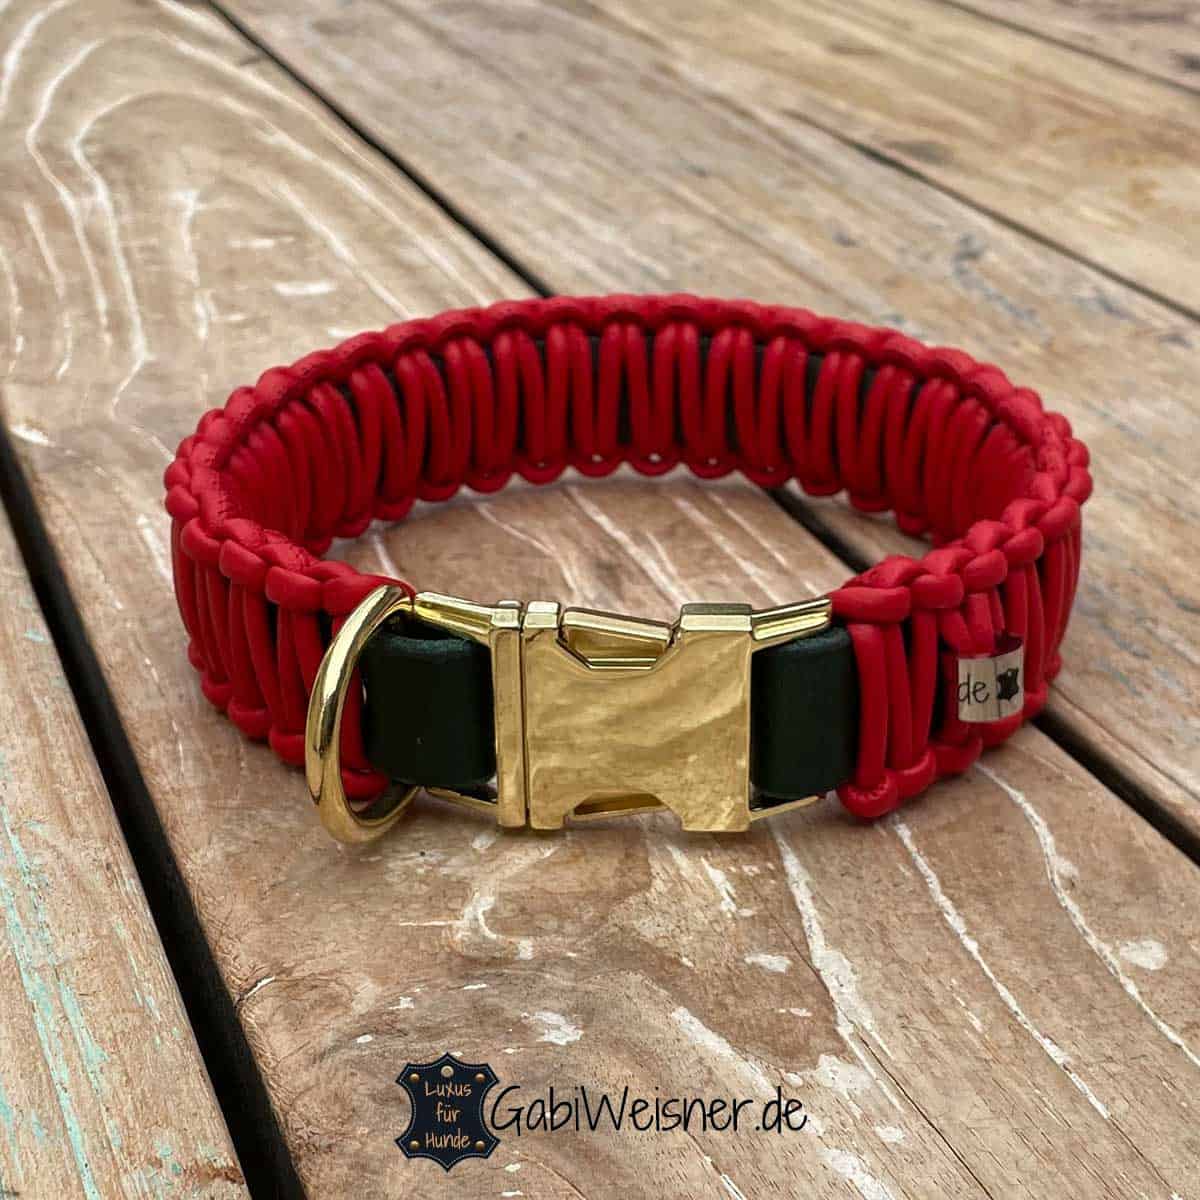 Hundehalsband mit Klick-Verschluss aus Metall in goldfarben. Leder 35 mm breit und aus Nappaleder in Rot.